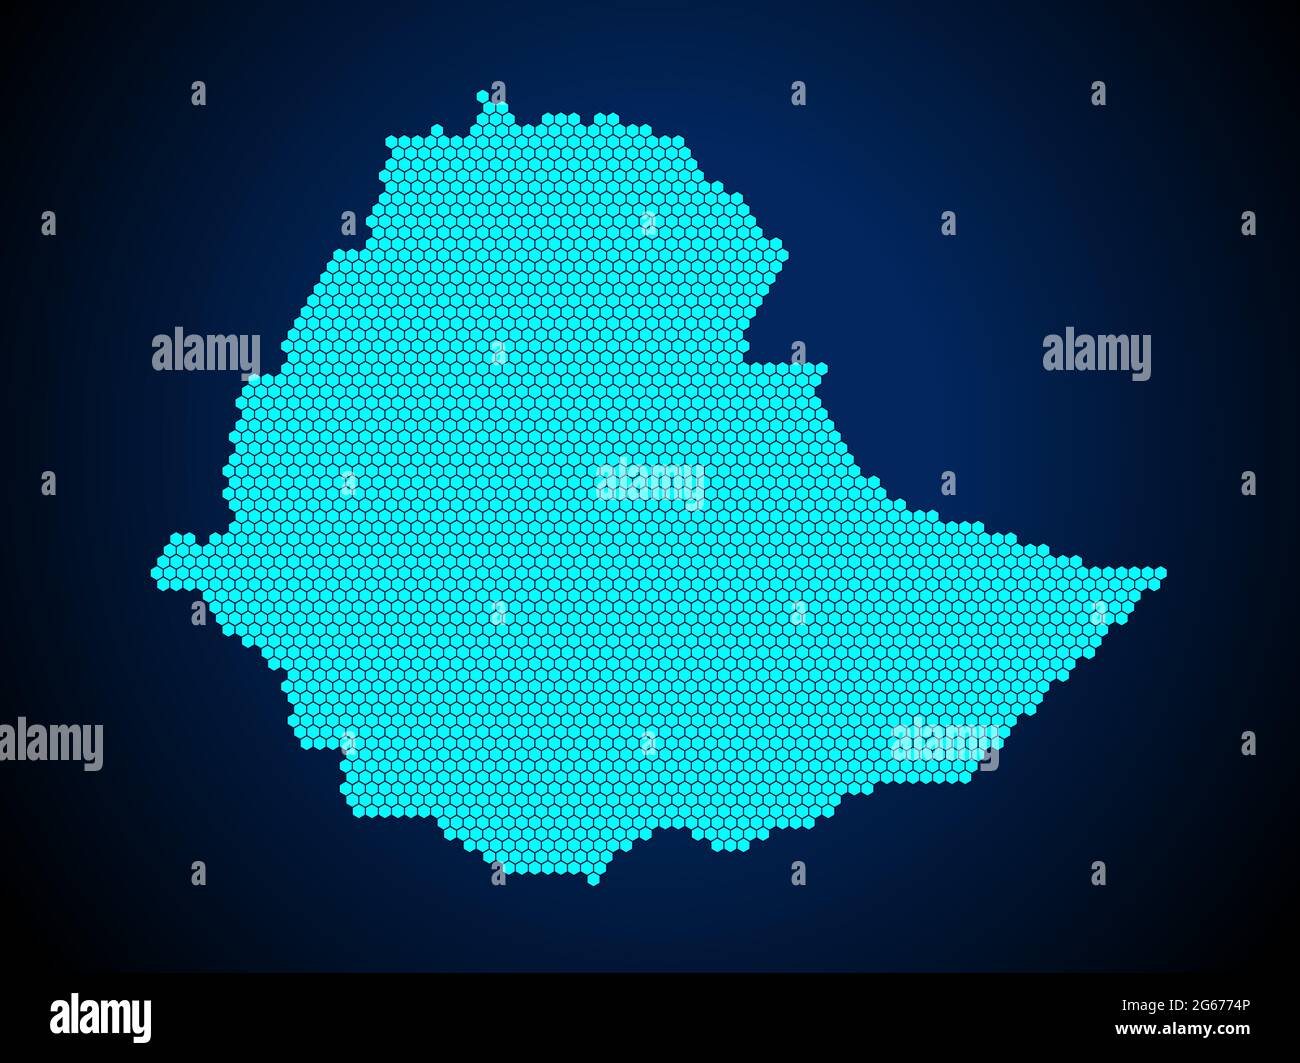 Pettine di miele o mappa Hexagon textured del paese di Etiopia isolato su sfondo blu scuro - illustrazione vettoriale Illustrazione Vettoriale